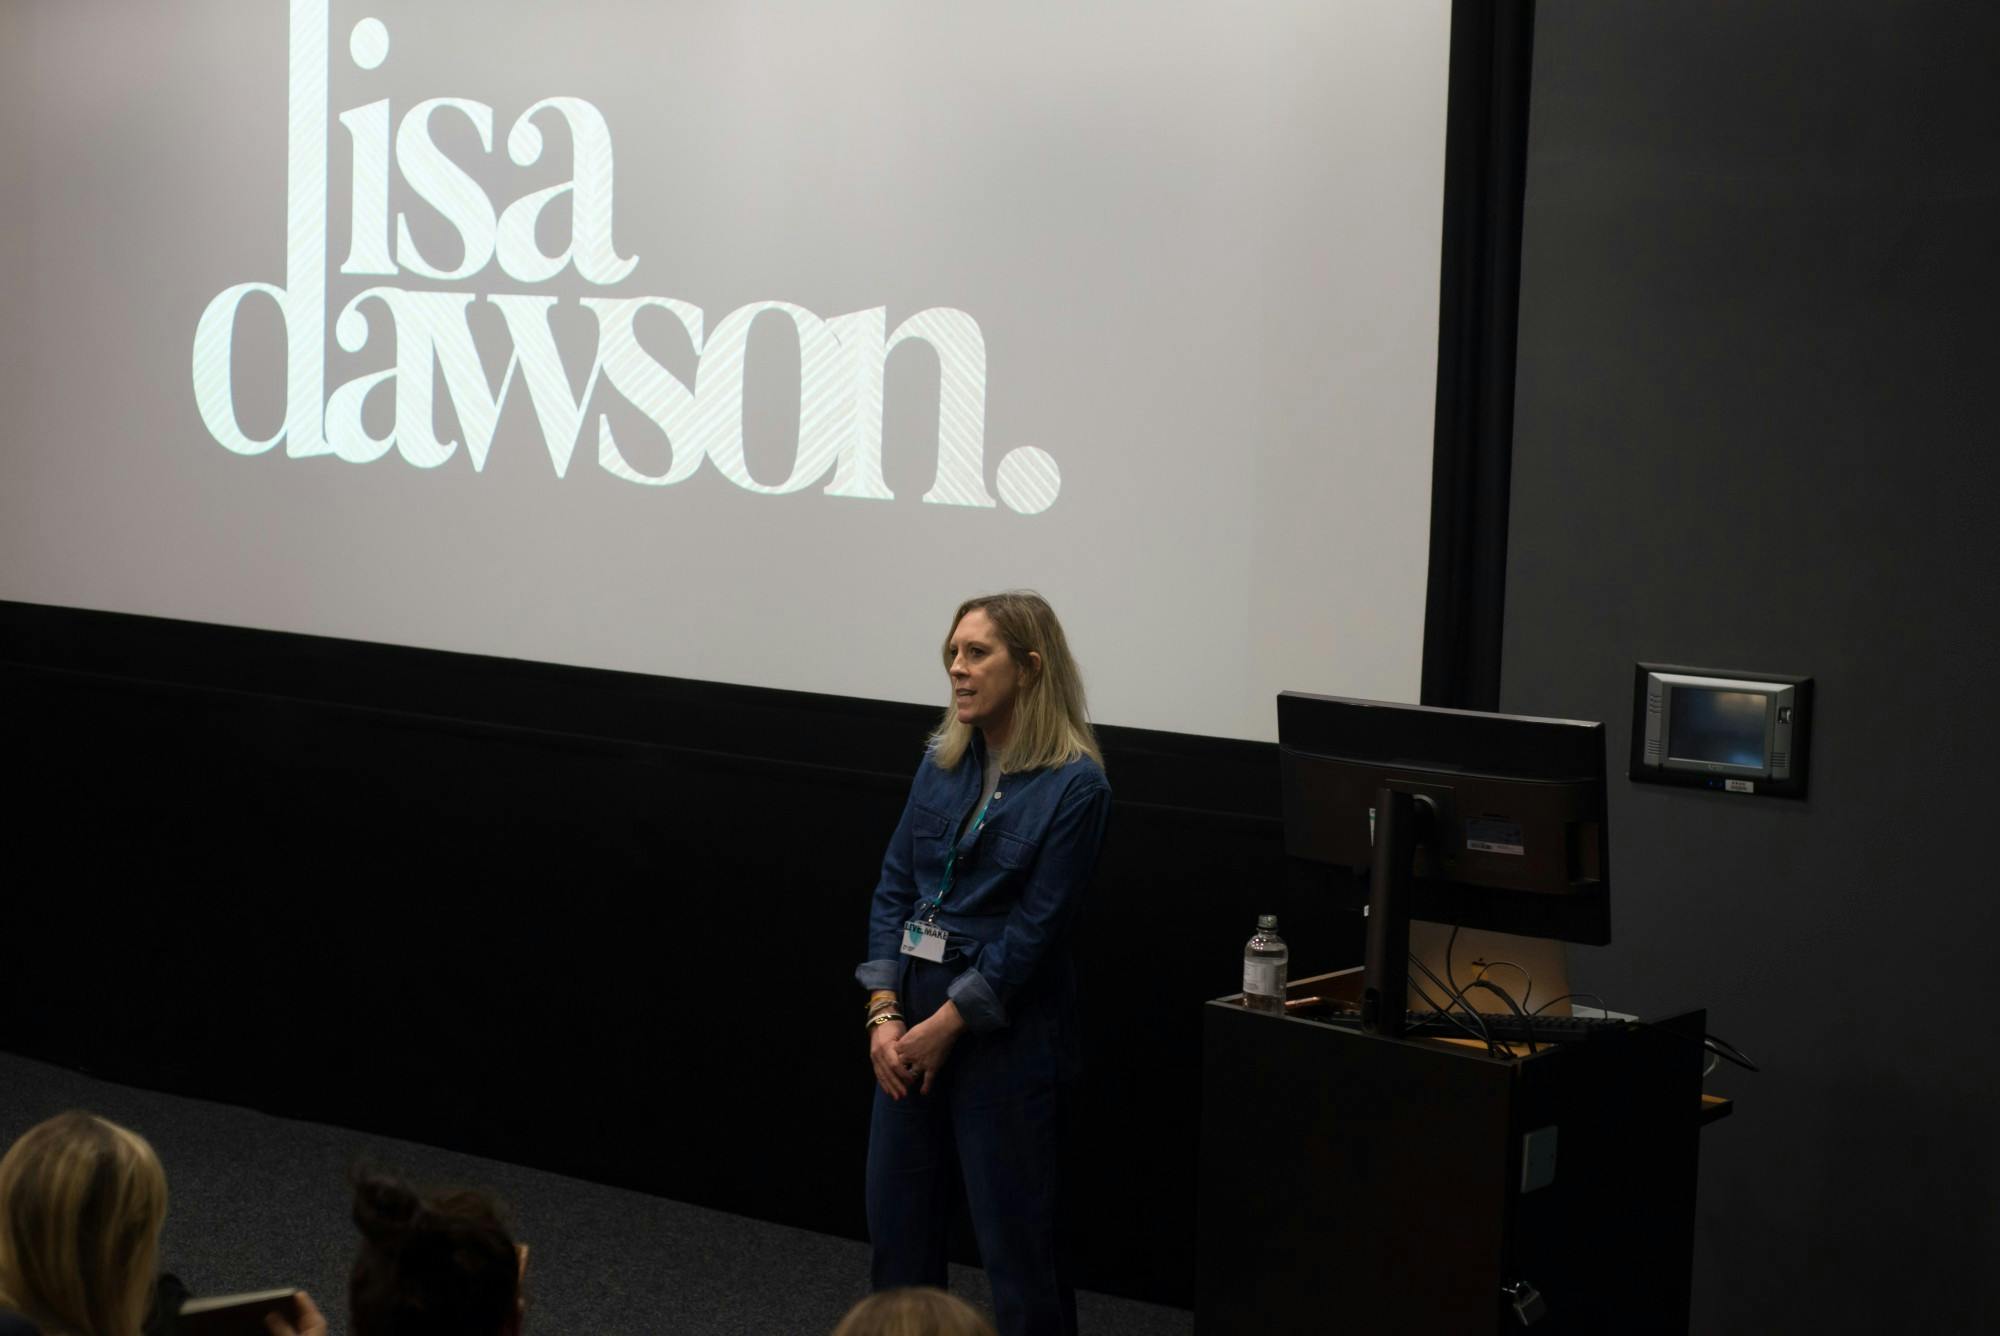 Lisa Dawson talk start 1